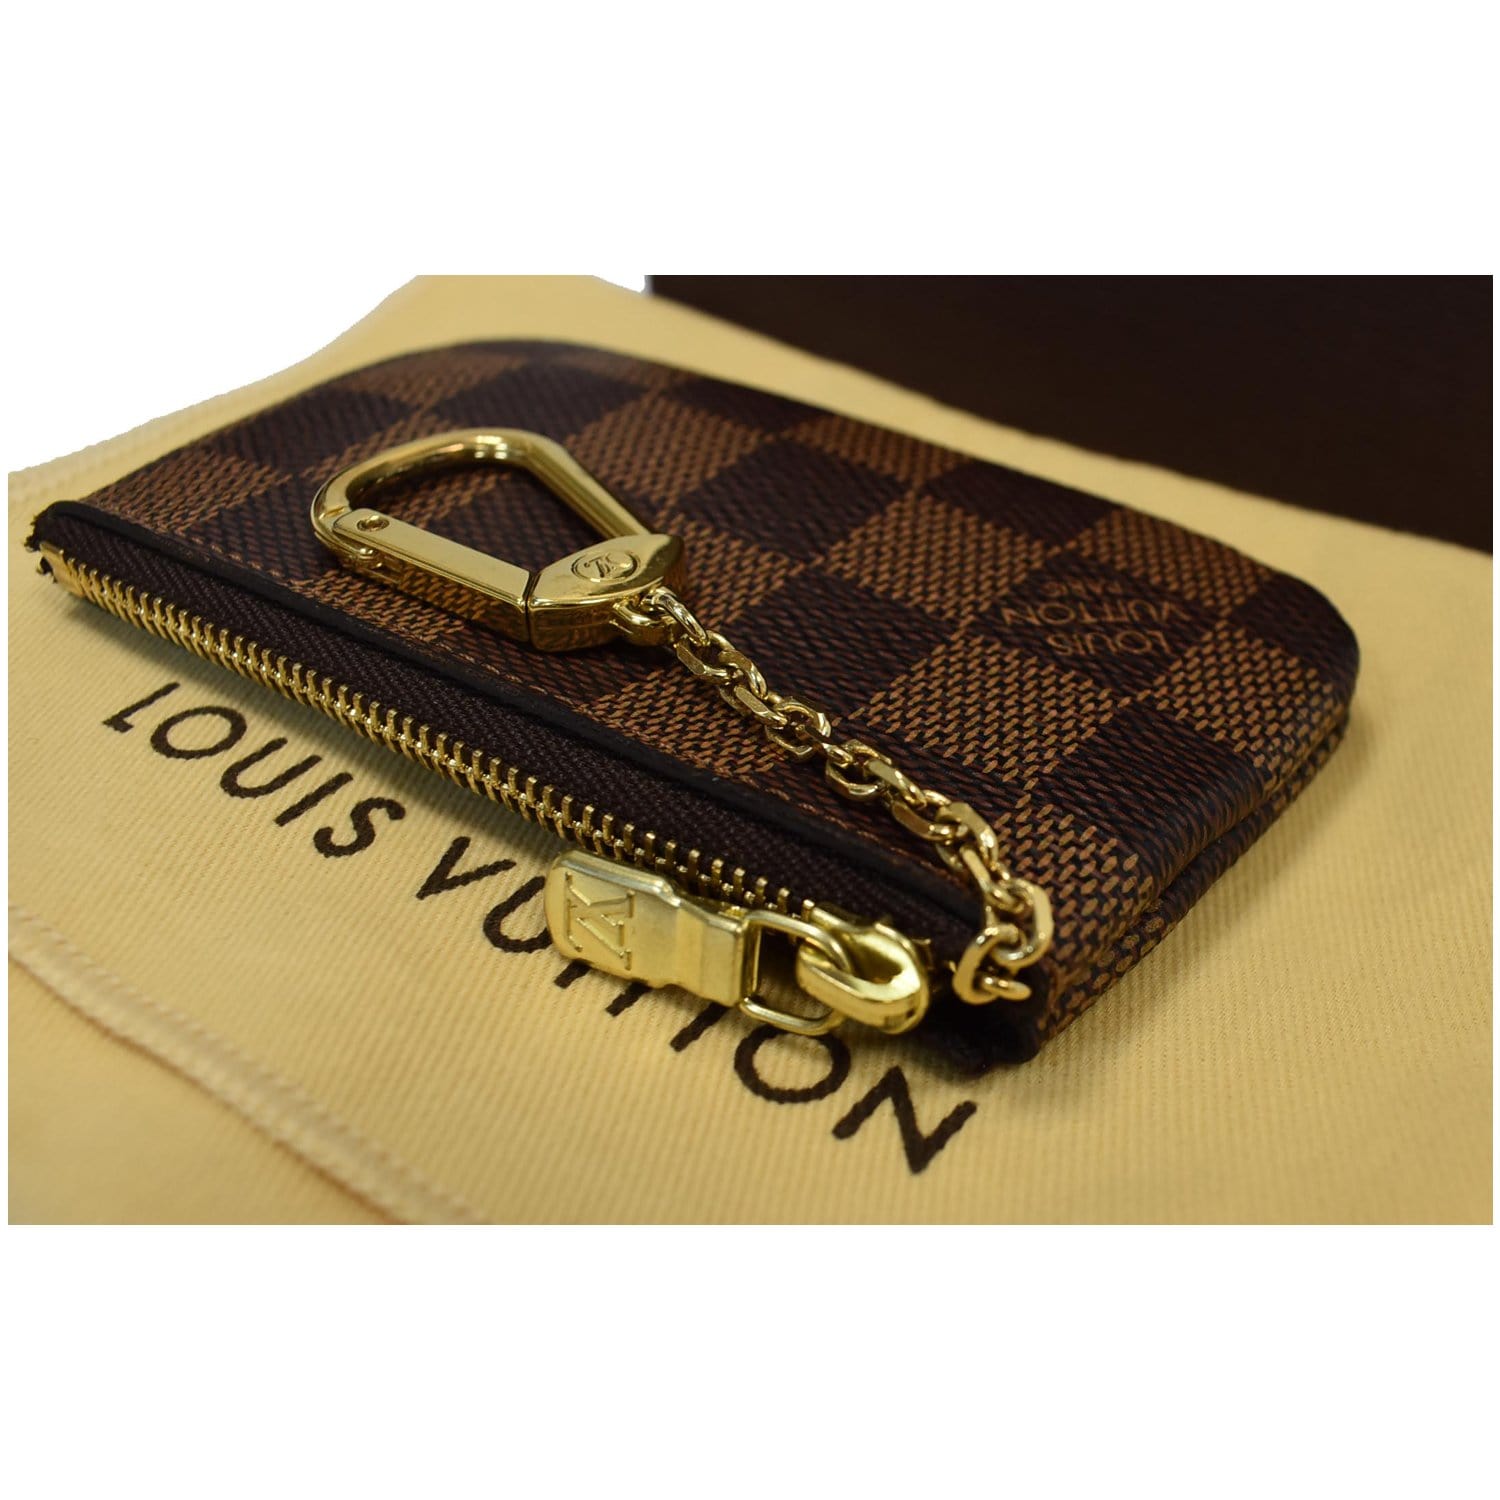 Louis Vuitton Monogram vs Damier Ebene Key Pouch Comparison + Price 